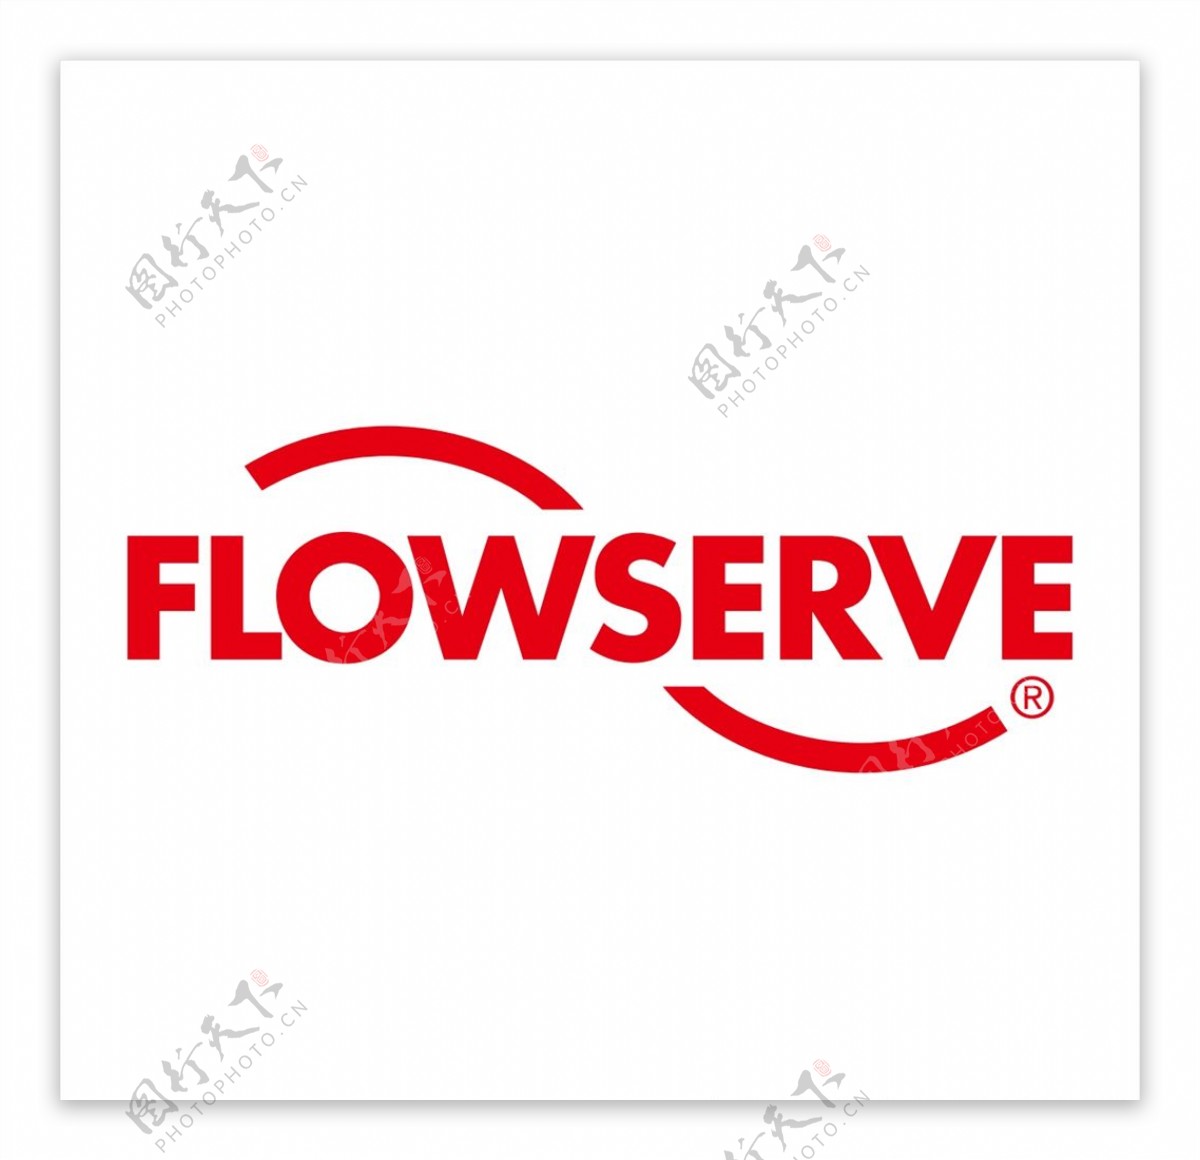 FLOWSERVE矢量图片